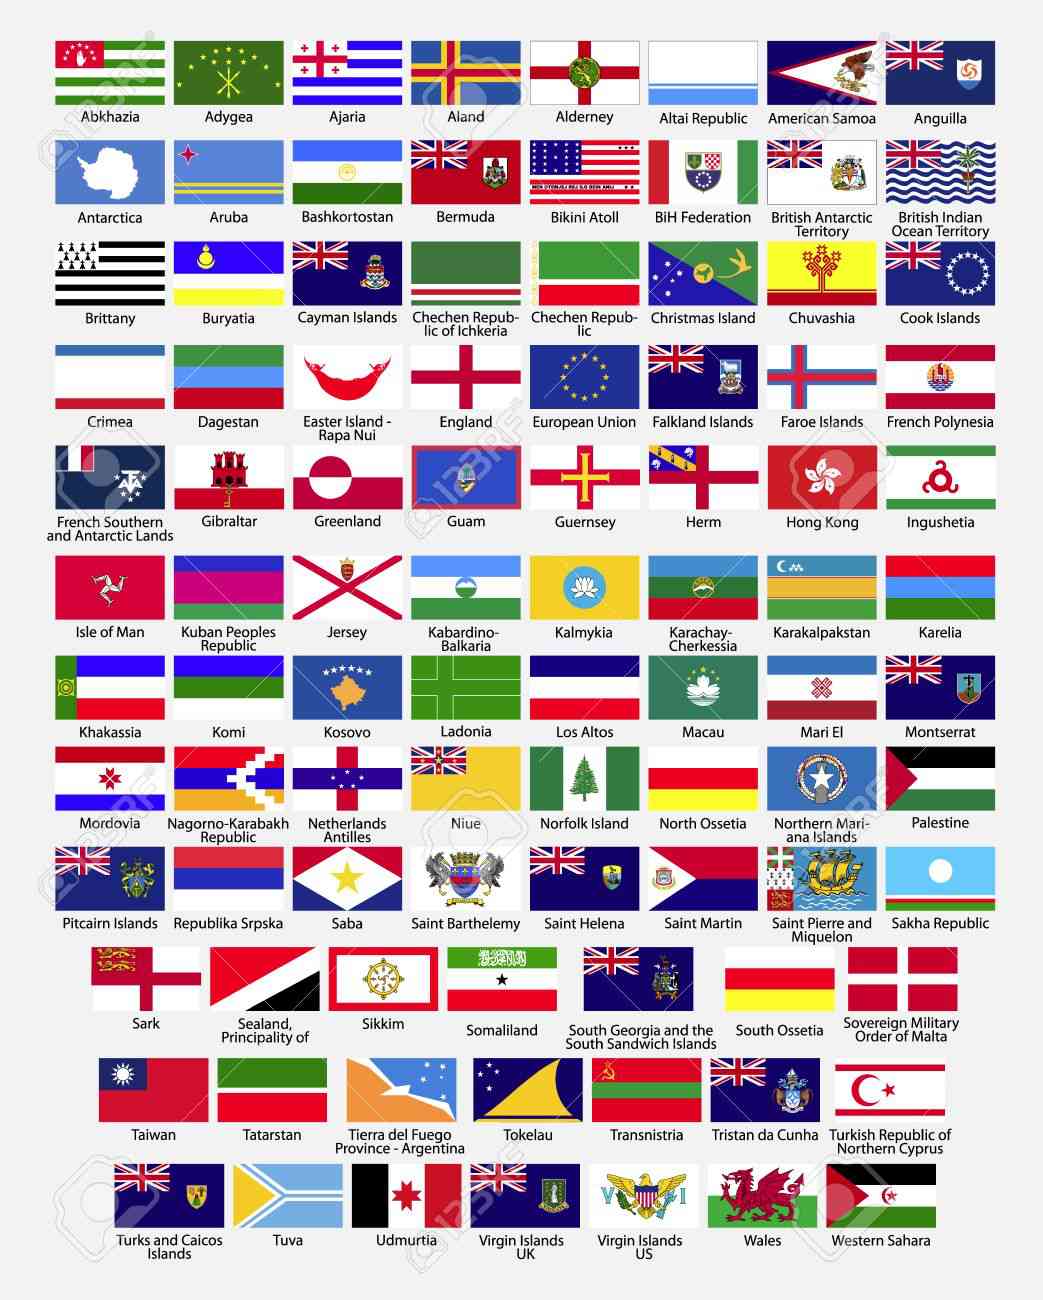 drapeaux du monde